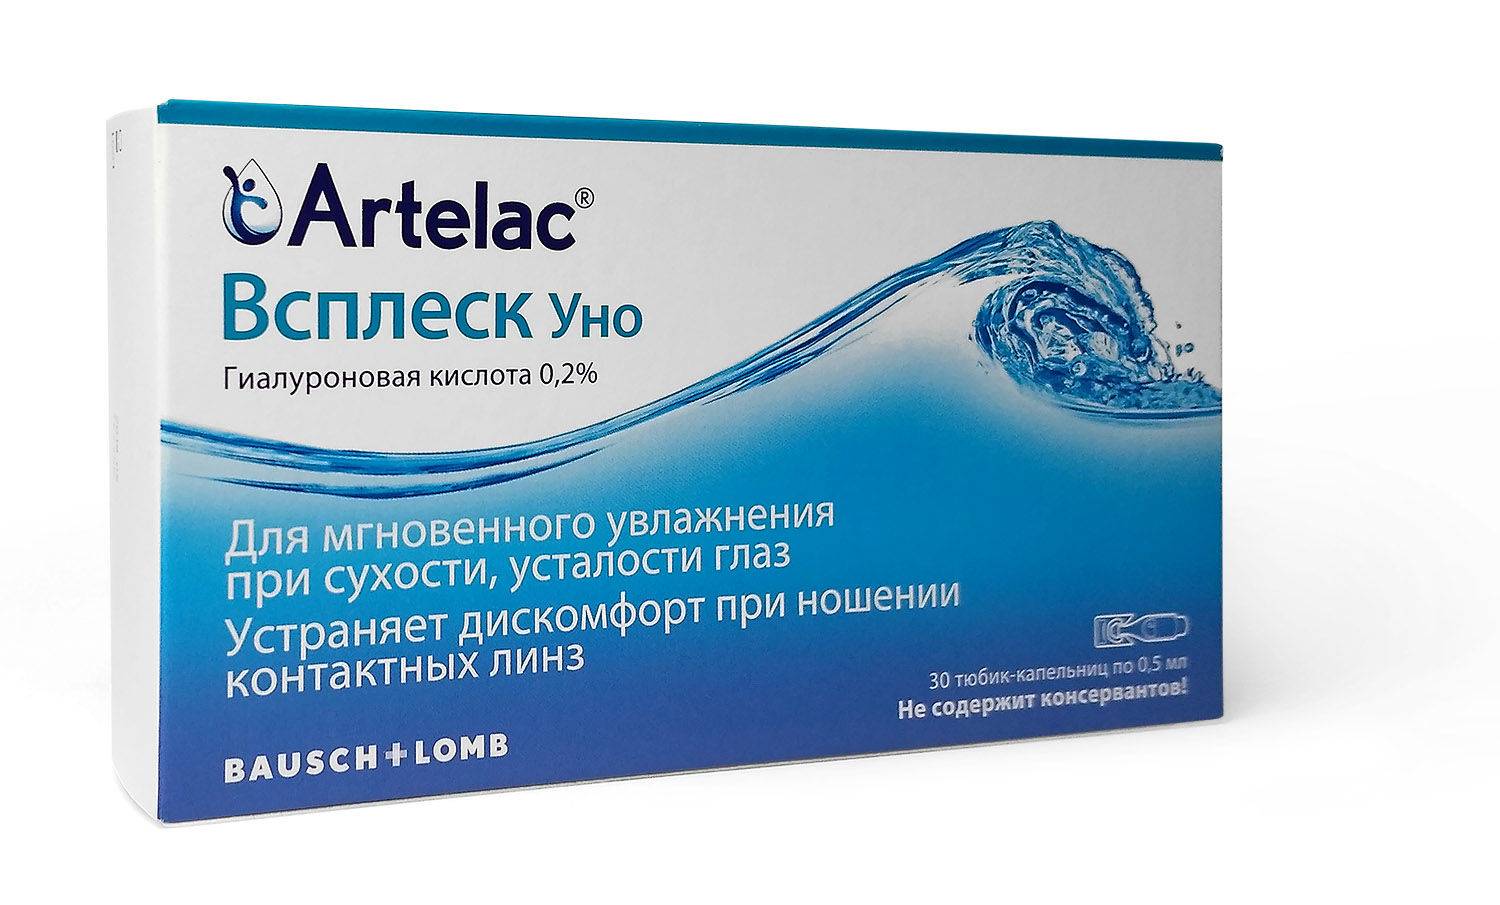 Артелак баланс уно: инструкция, отзывы, аналоги, цена в аптеках - medcentre.com.ua